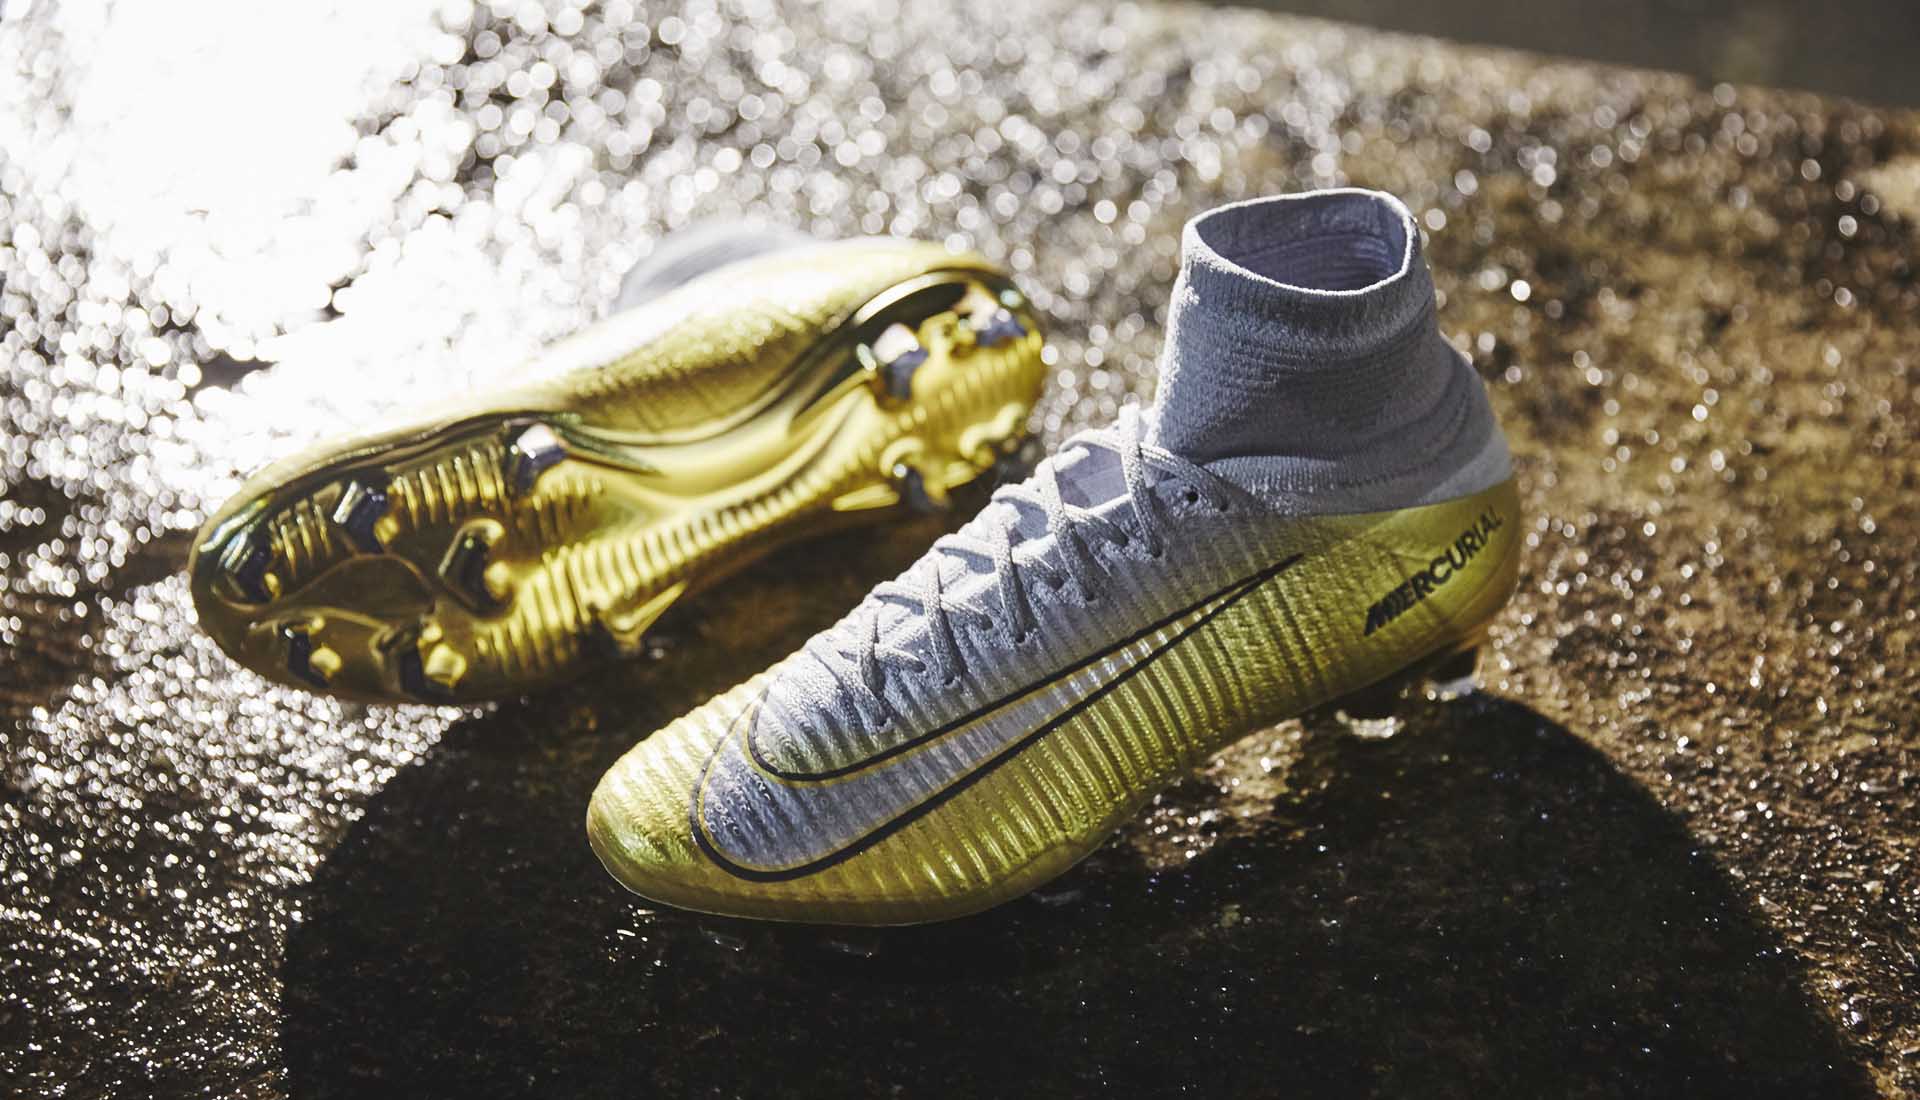 Mẫu giày đá bóng Nike cao cổ Superfly V kỷ niệm danh hiệu quả bóng vàng 2017 của Ronaldo